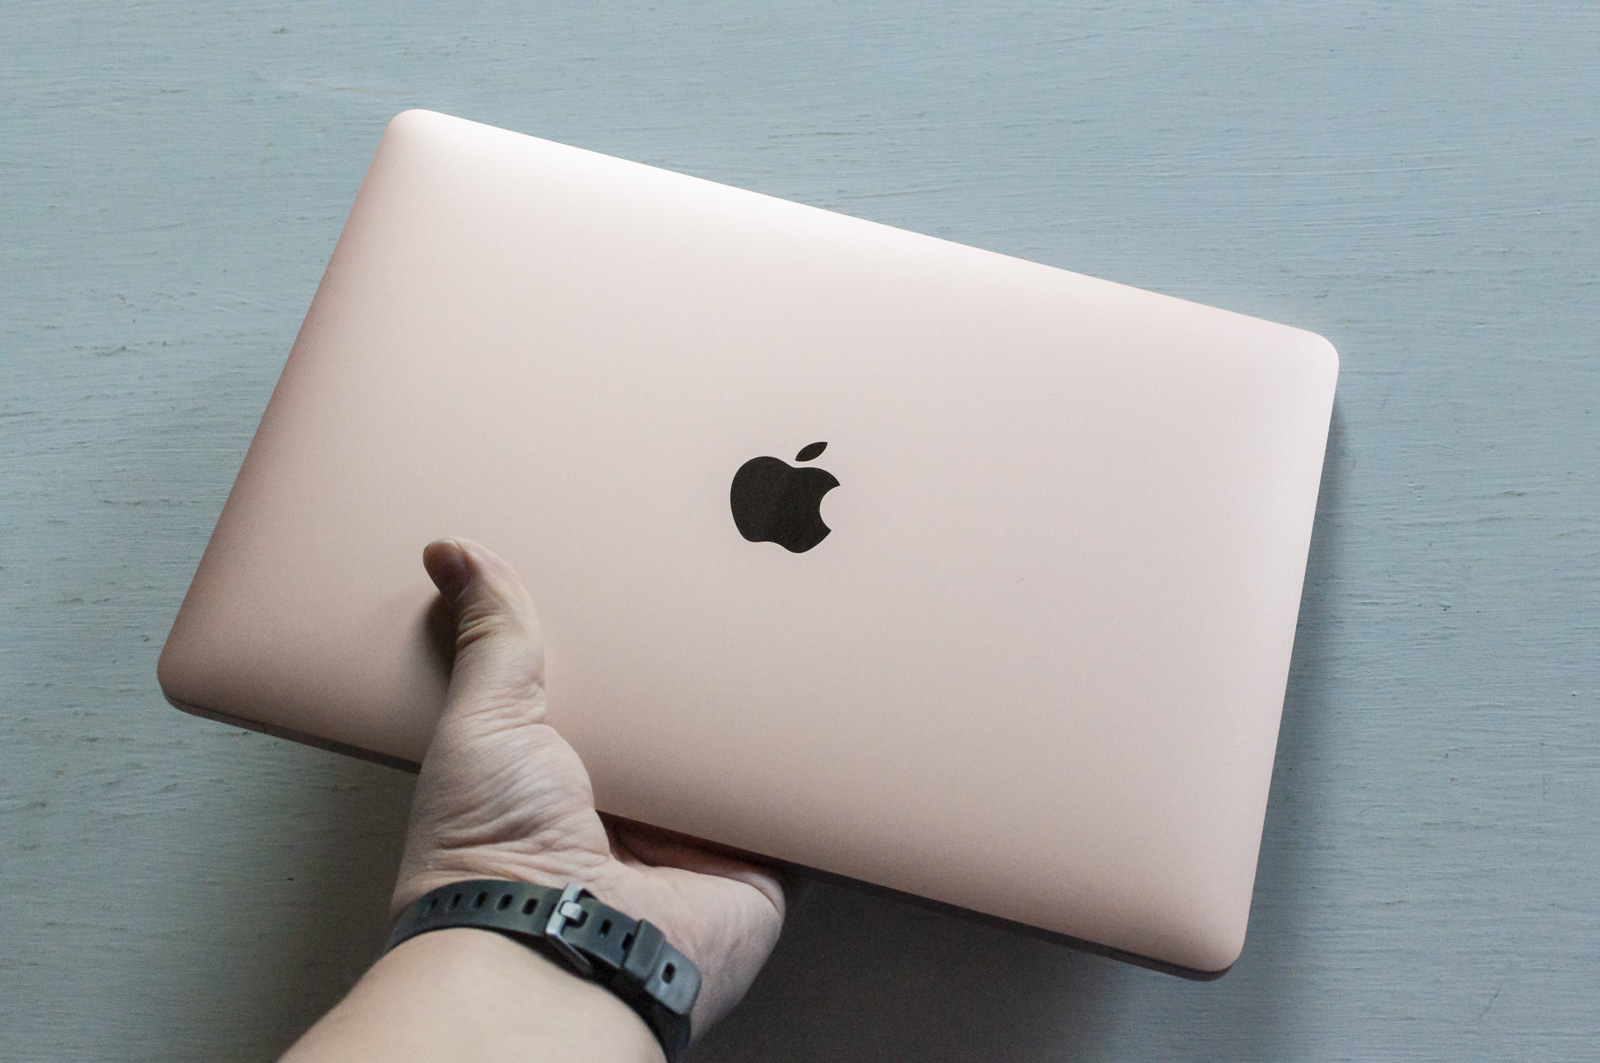 Apple lavora a MacBook Air più sottile e leggero atteso nel 2021 o